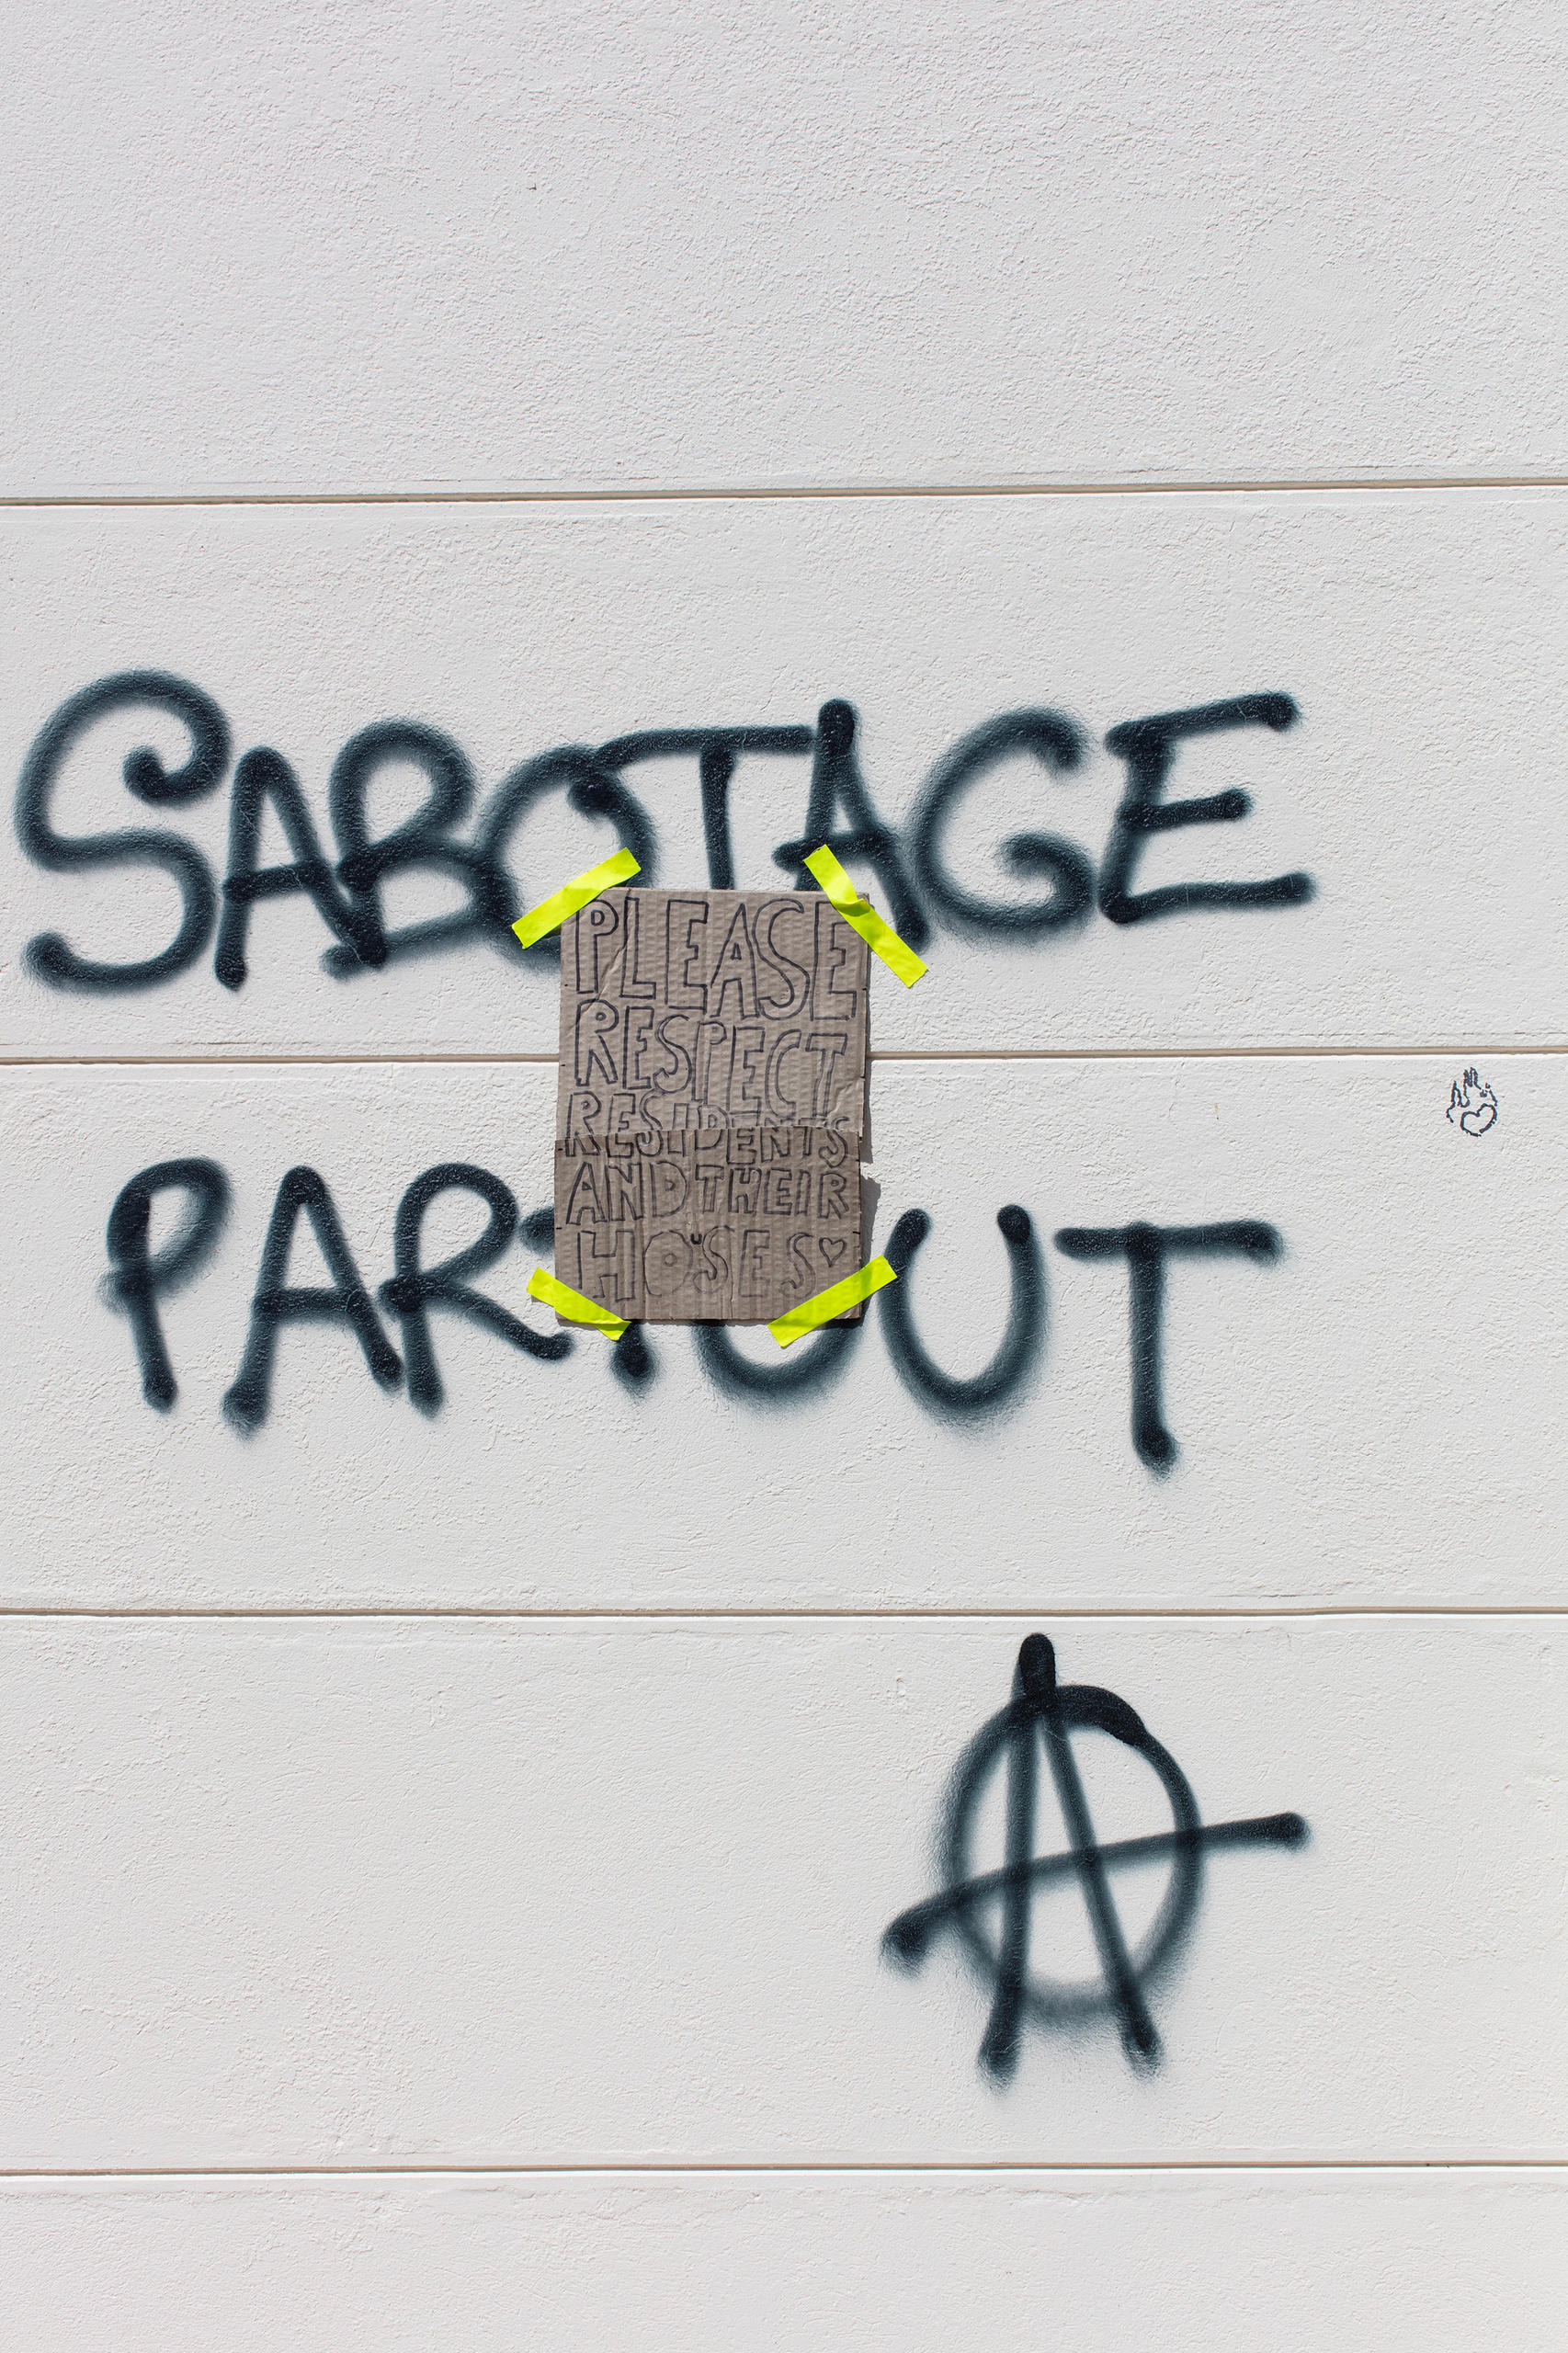 Sabotage Partout mit Anarchie-Zeichen.